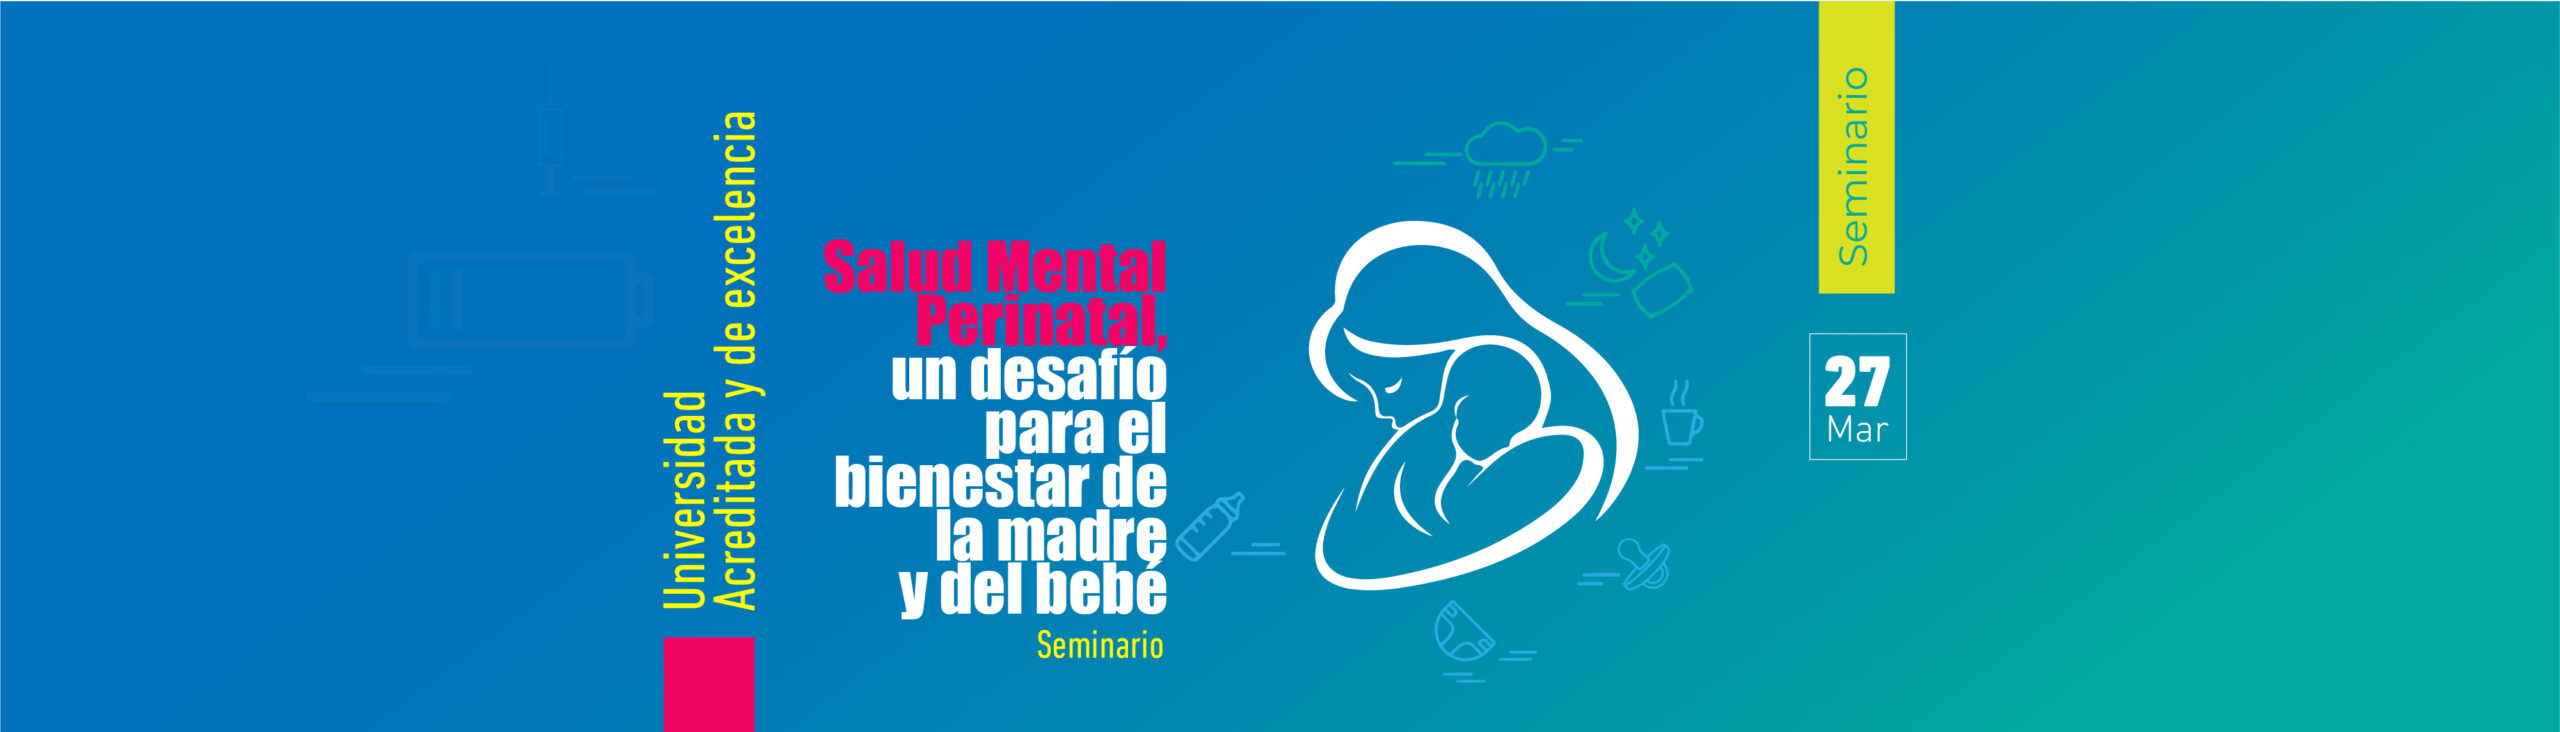 Seminario "Salud Mental Perinatal, un desafío para el bienestar de la madre y del bebé" UTalca